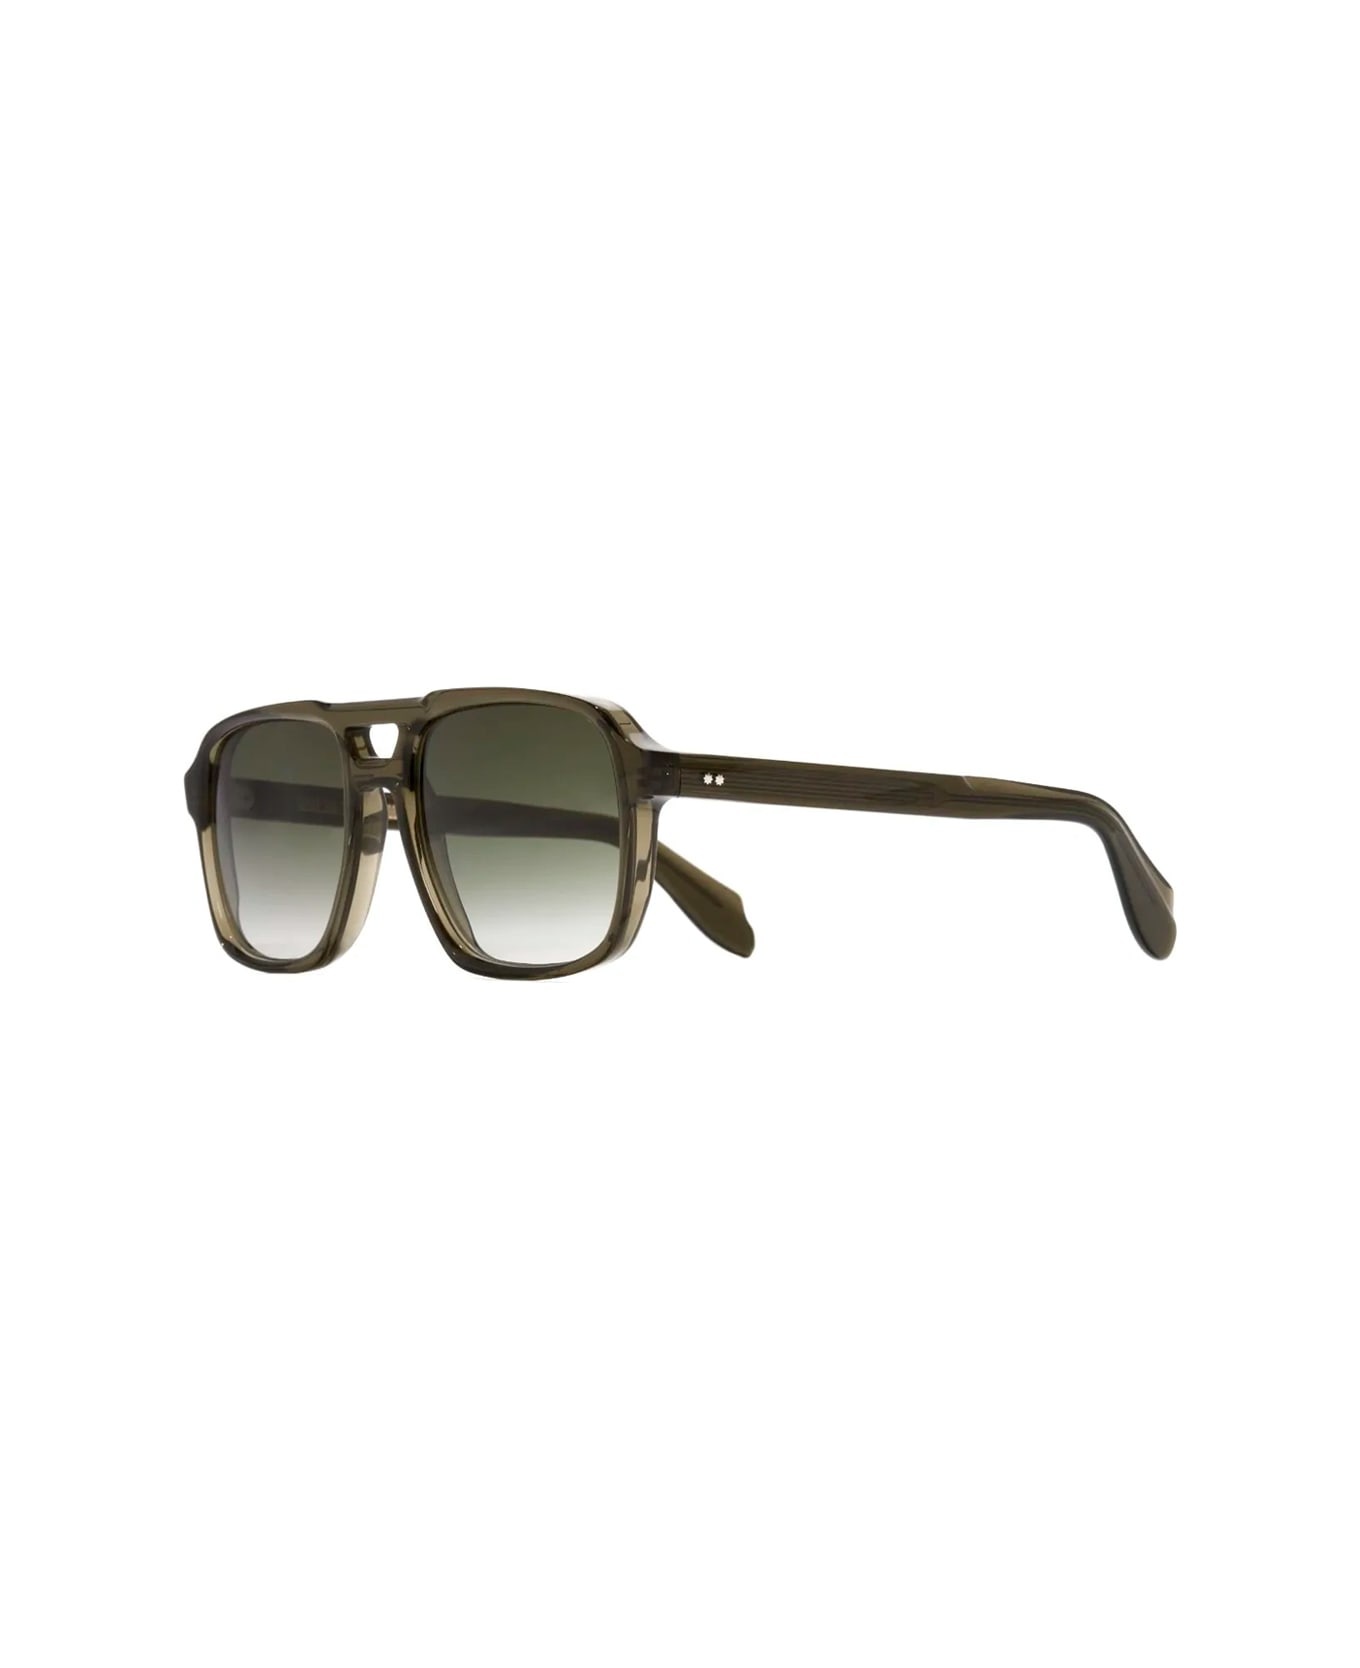 Cutler and Gross 1394 09 Sunglasses - Verde